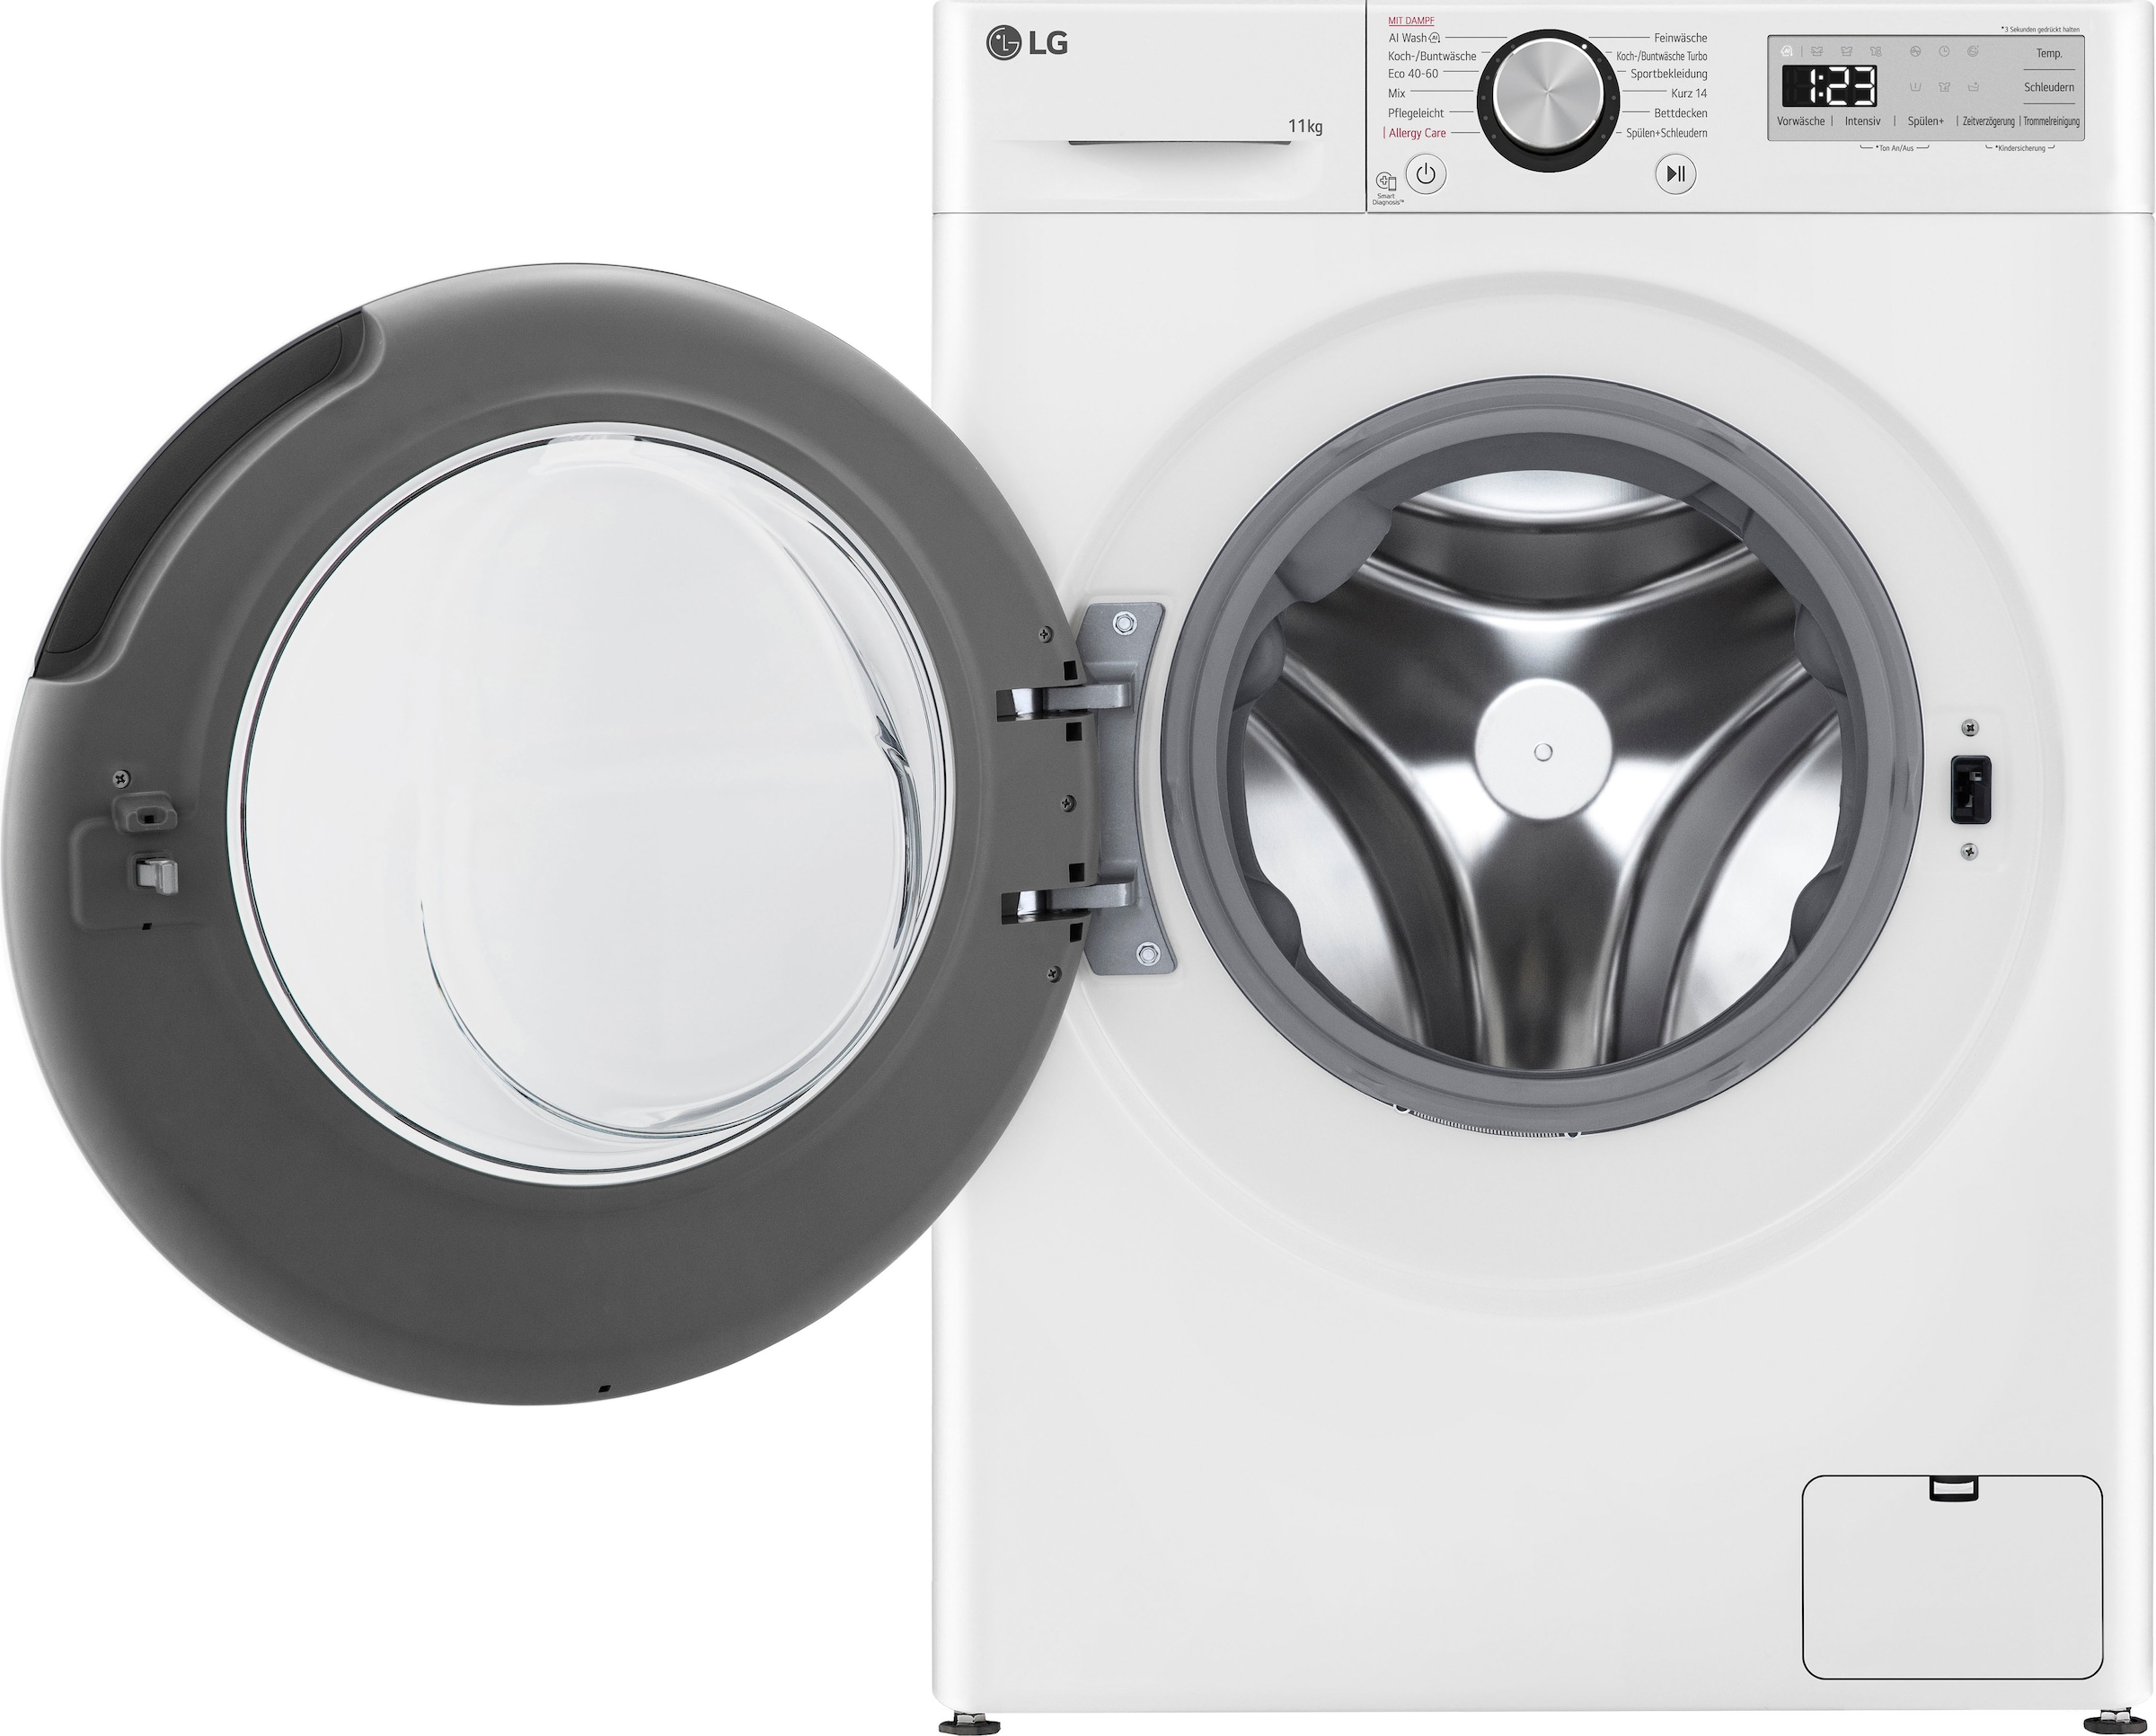 LG Waschmaschine 5, Garantie inklusive bei 11 U/min, kg, F4WR4911P, Steam-Funktion, OTTO Serie kaufen 1400 4 »F4WR4911P«, Jahre